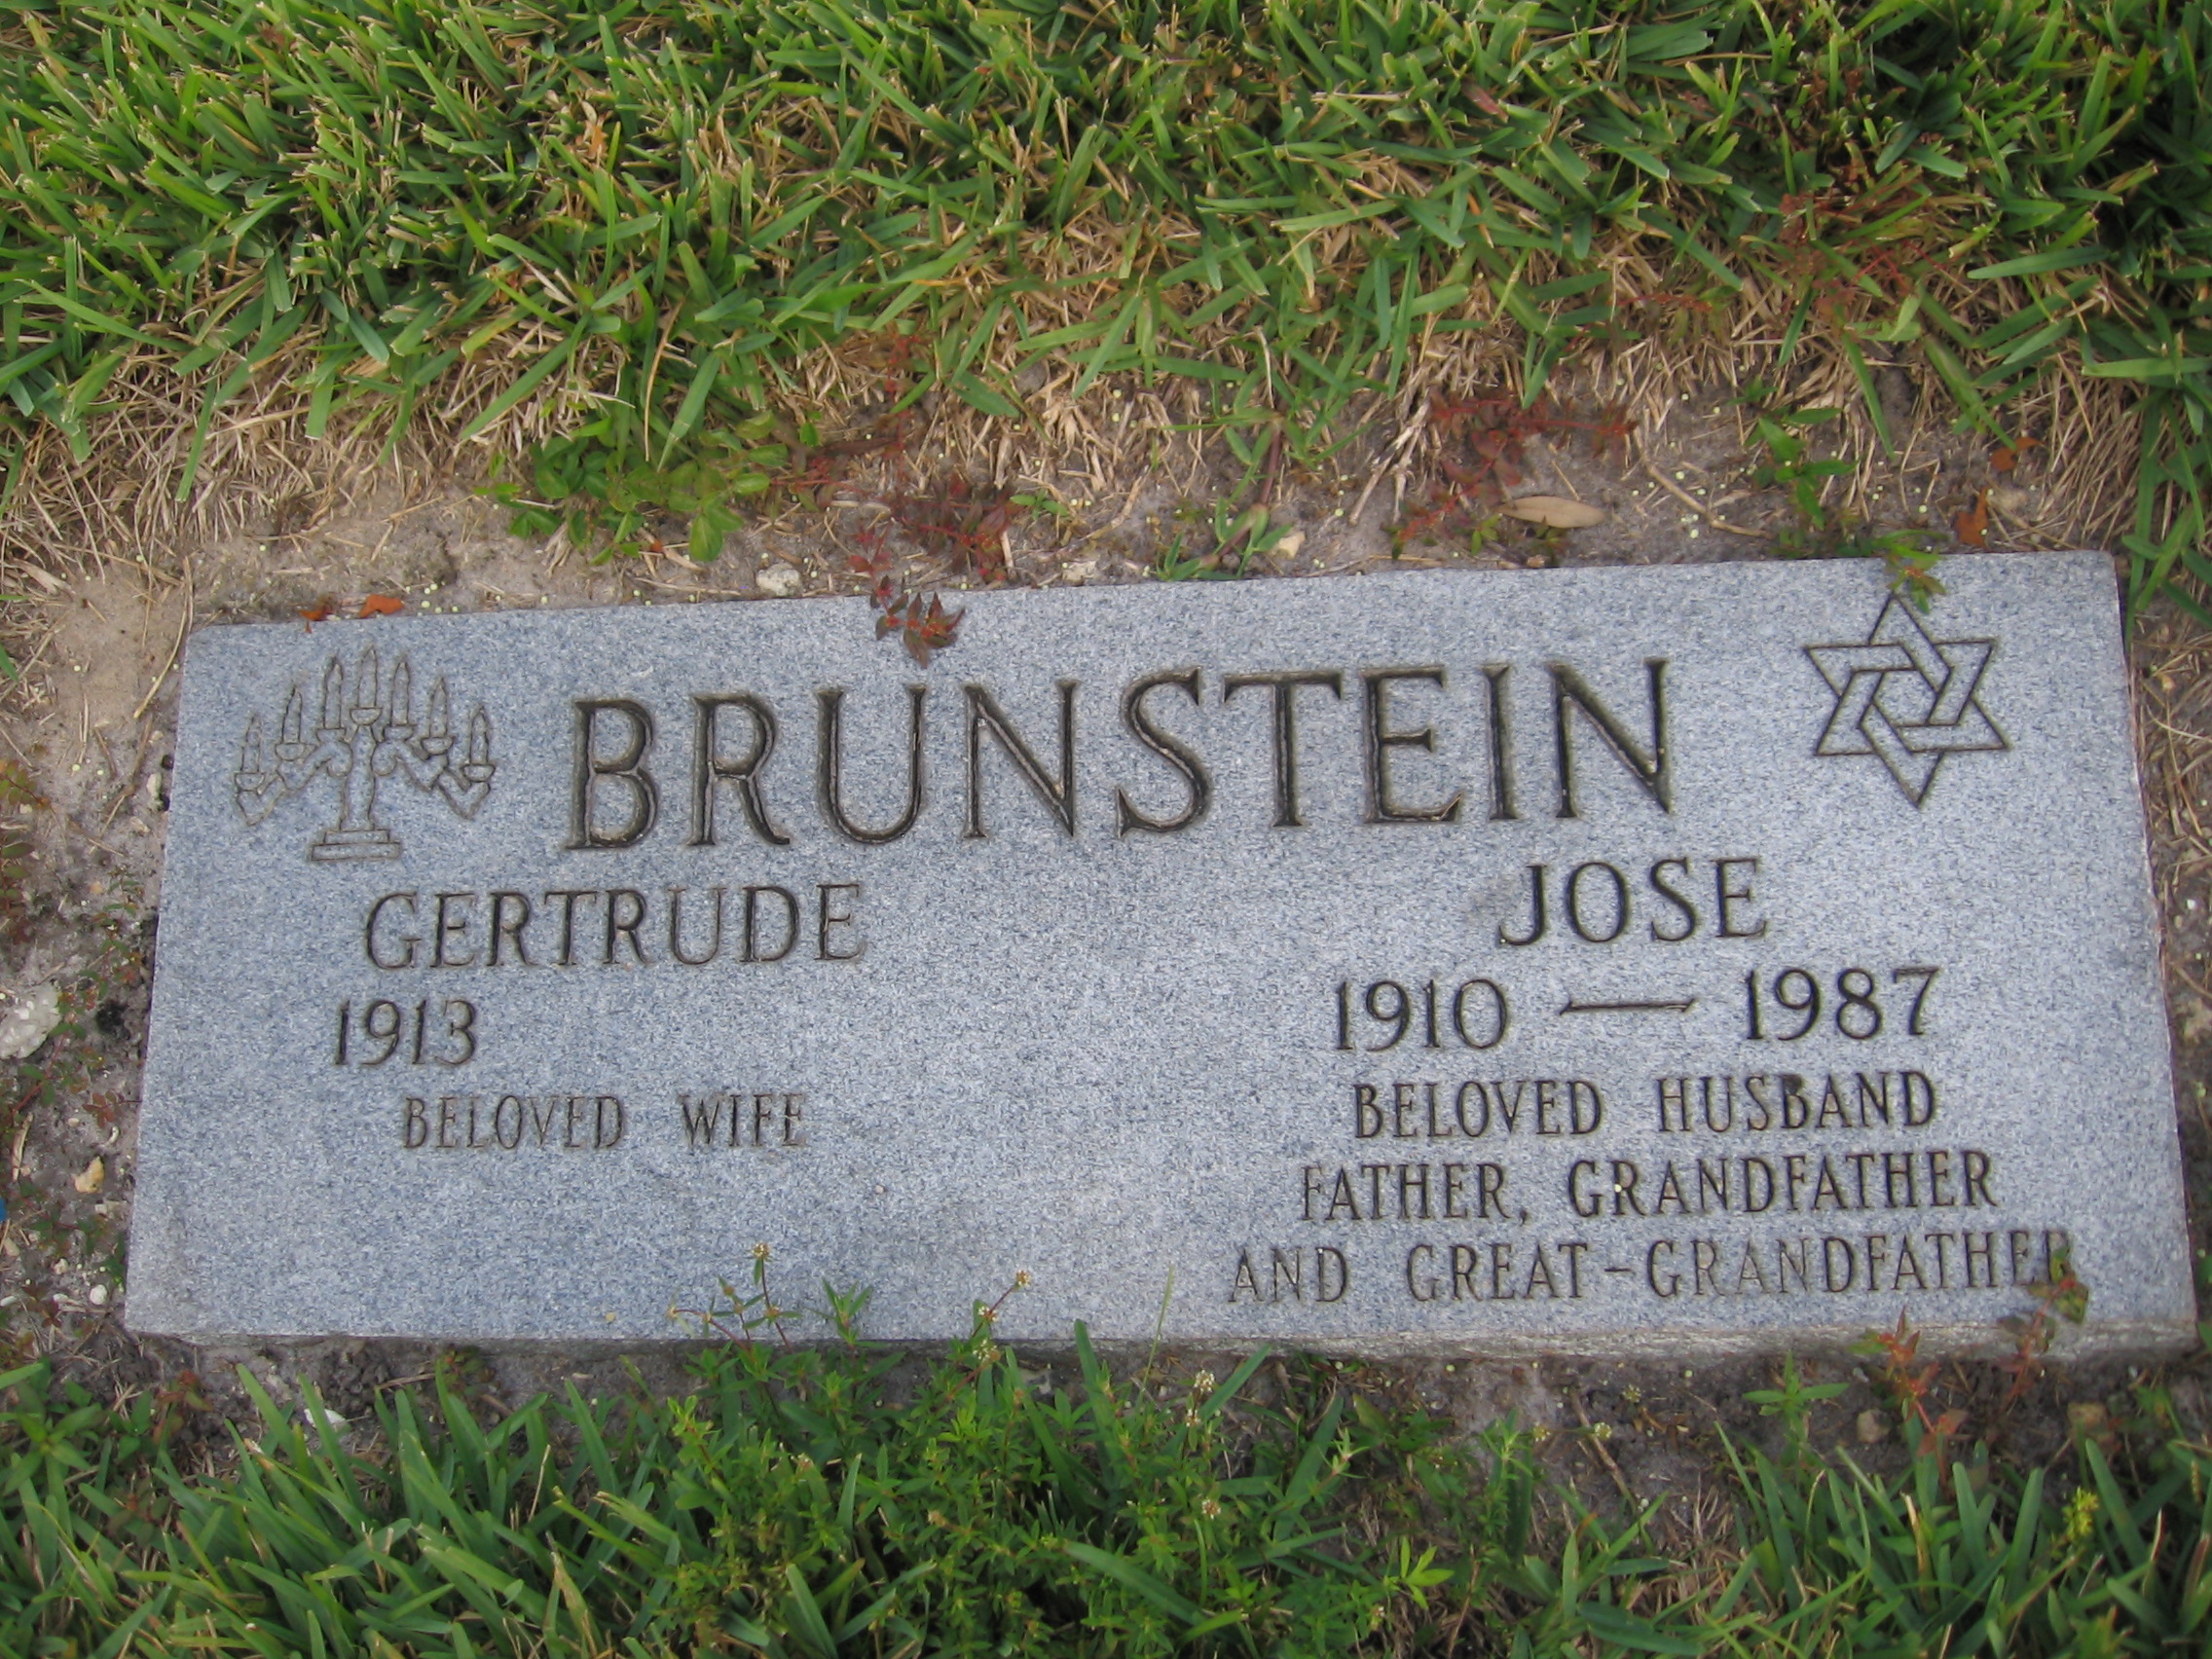 Jose Brunstein